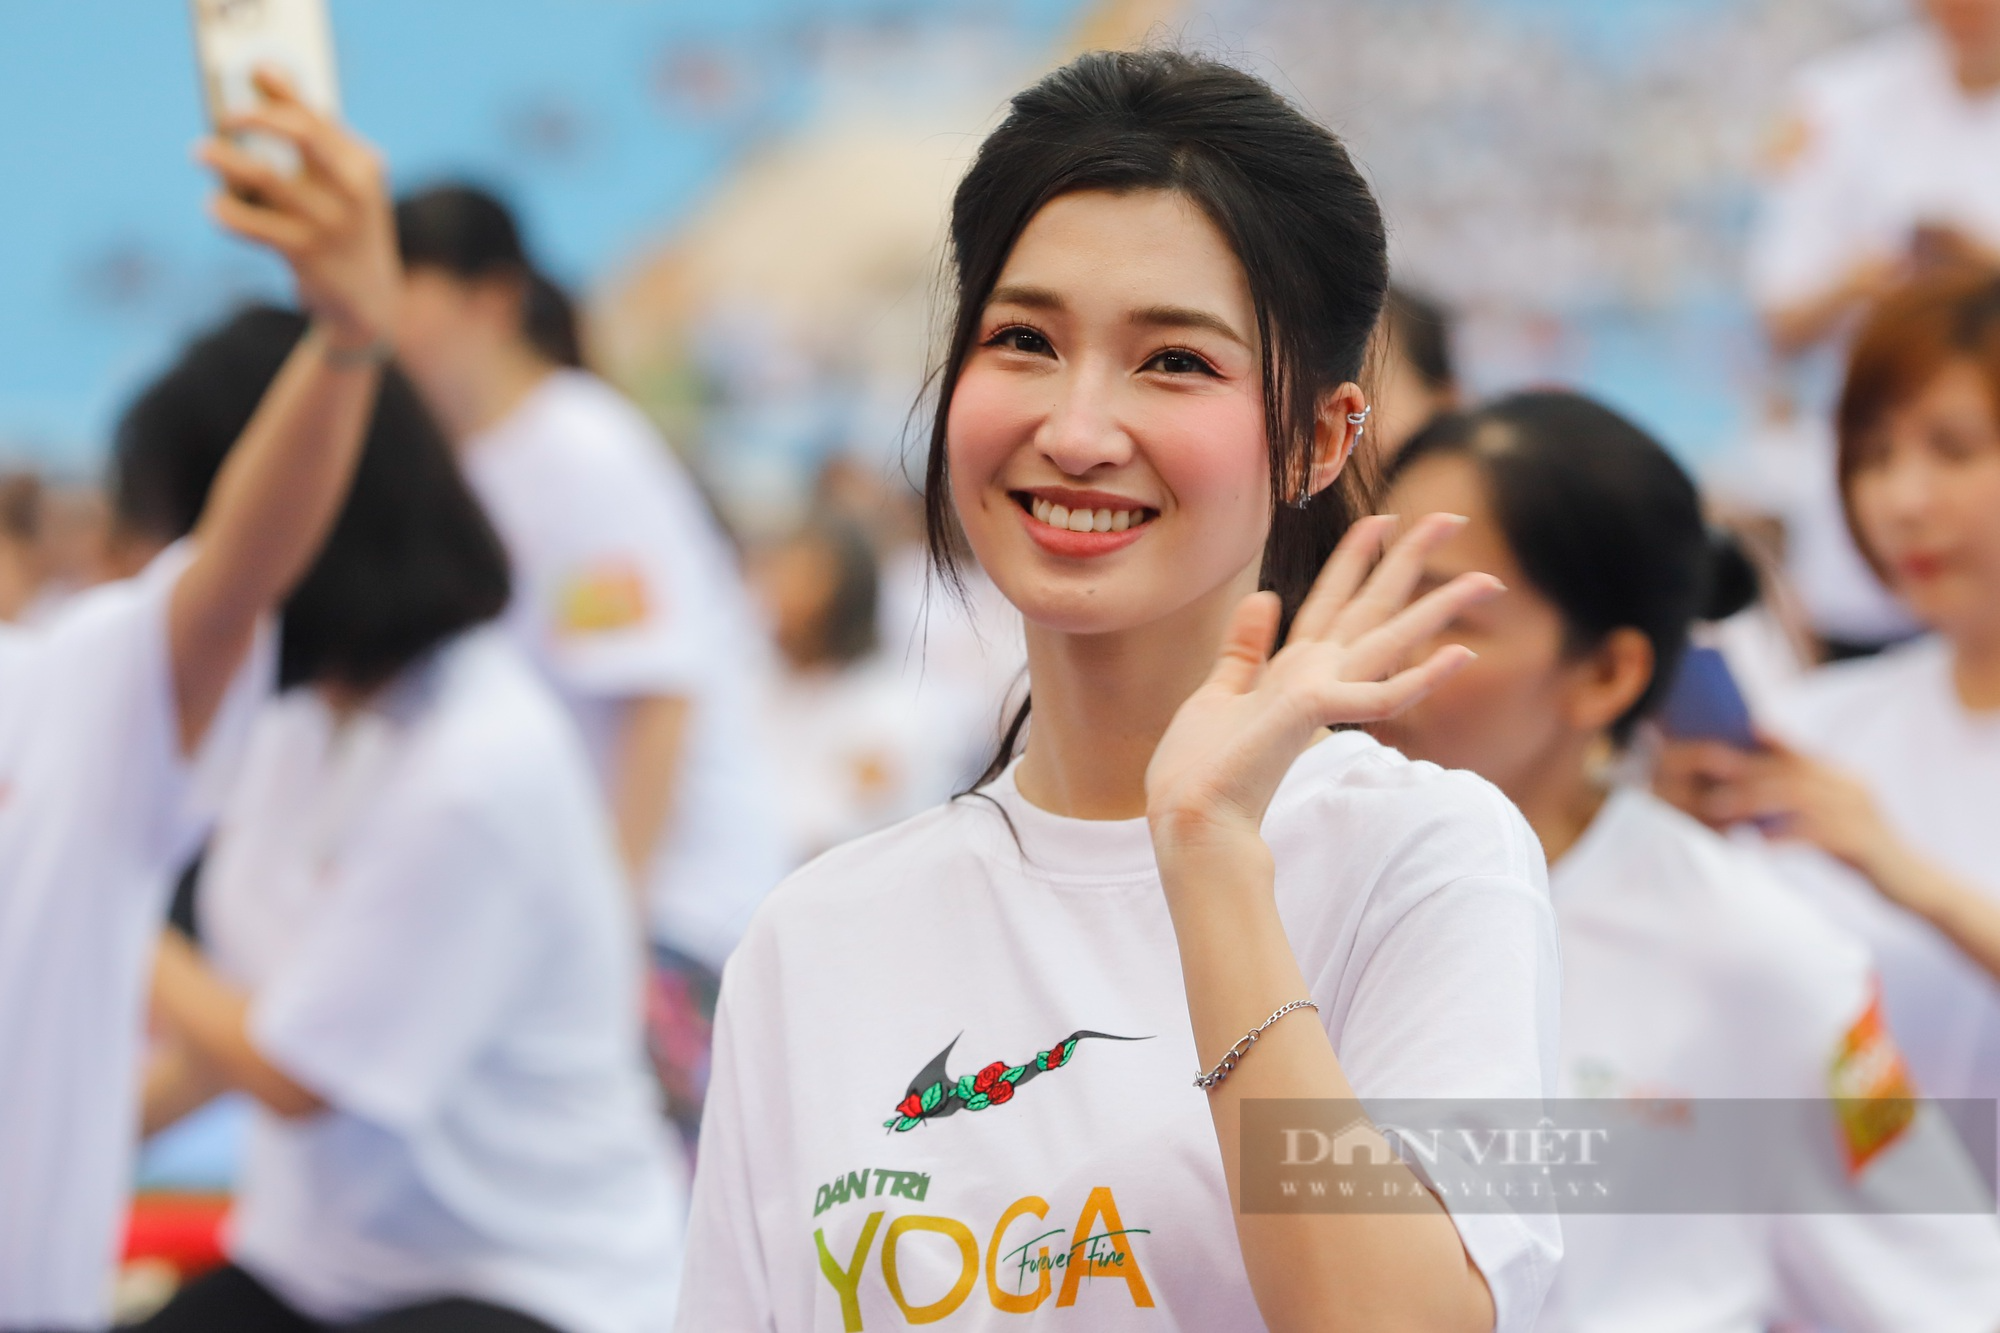 Dàn hoa hậu, á hậu Việt Nam khoe sắc trong màn đồng diễn Yoga đông người nhất Việt Nam - Ảnh 6.